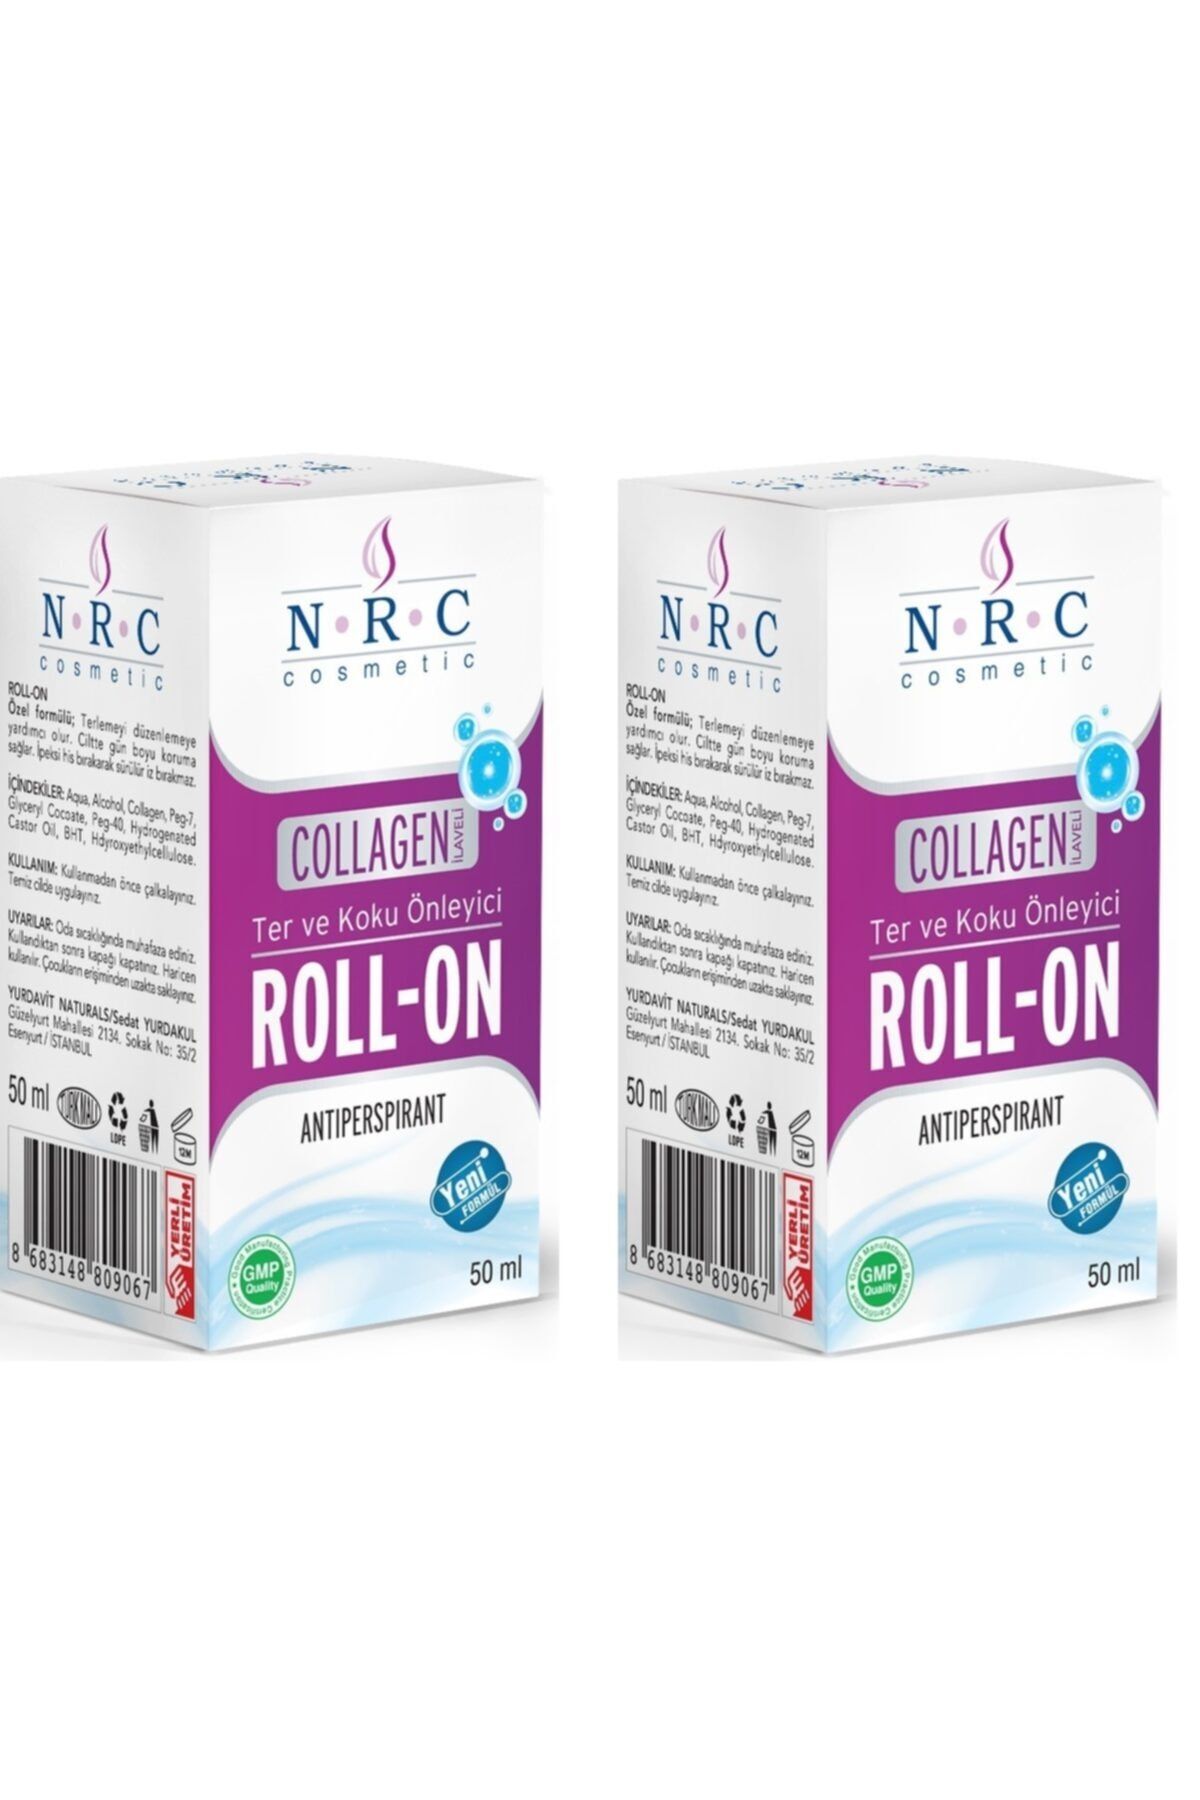 NRC Ter Ve Koku Önleyici Collagen Ilaveli Antiperspırant Roll-on 50 ml X2 Kutu